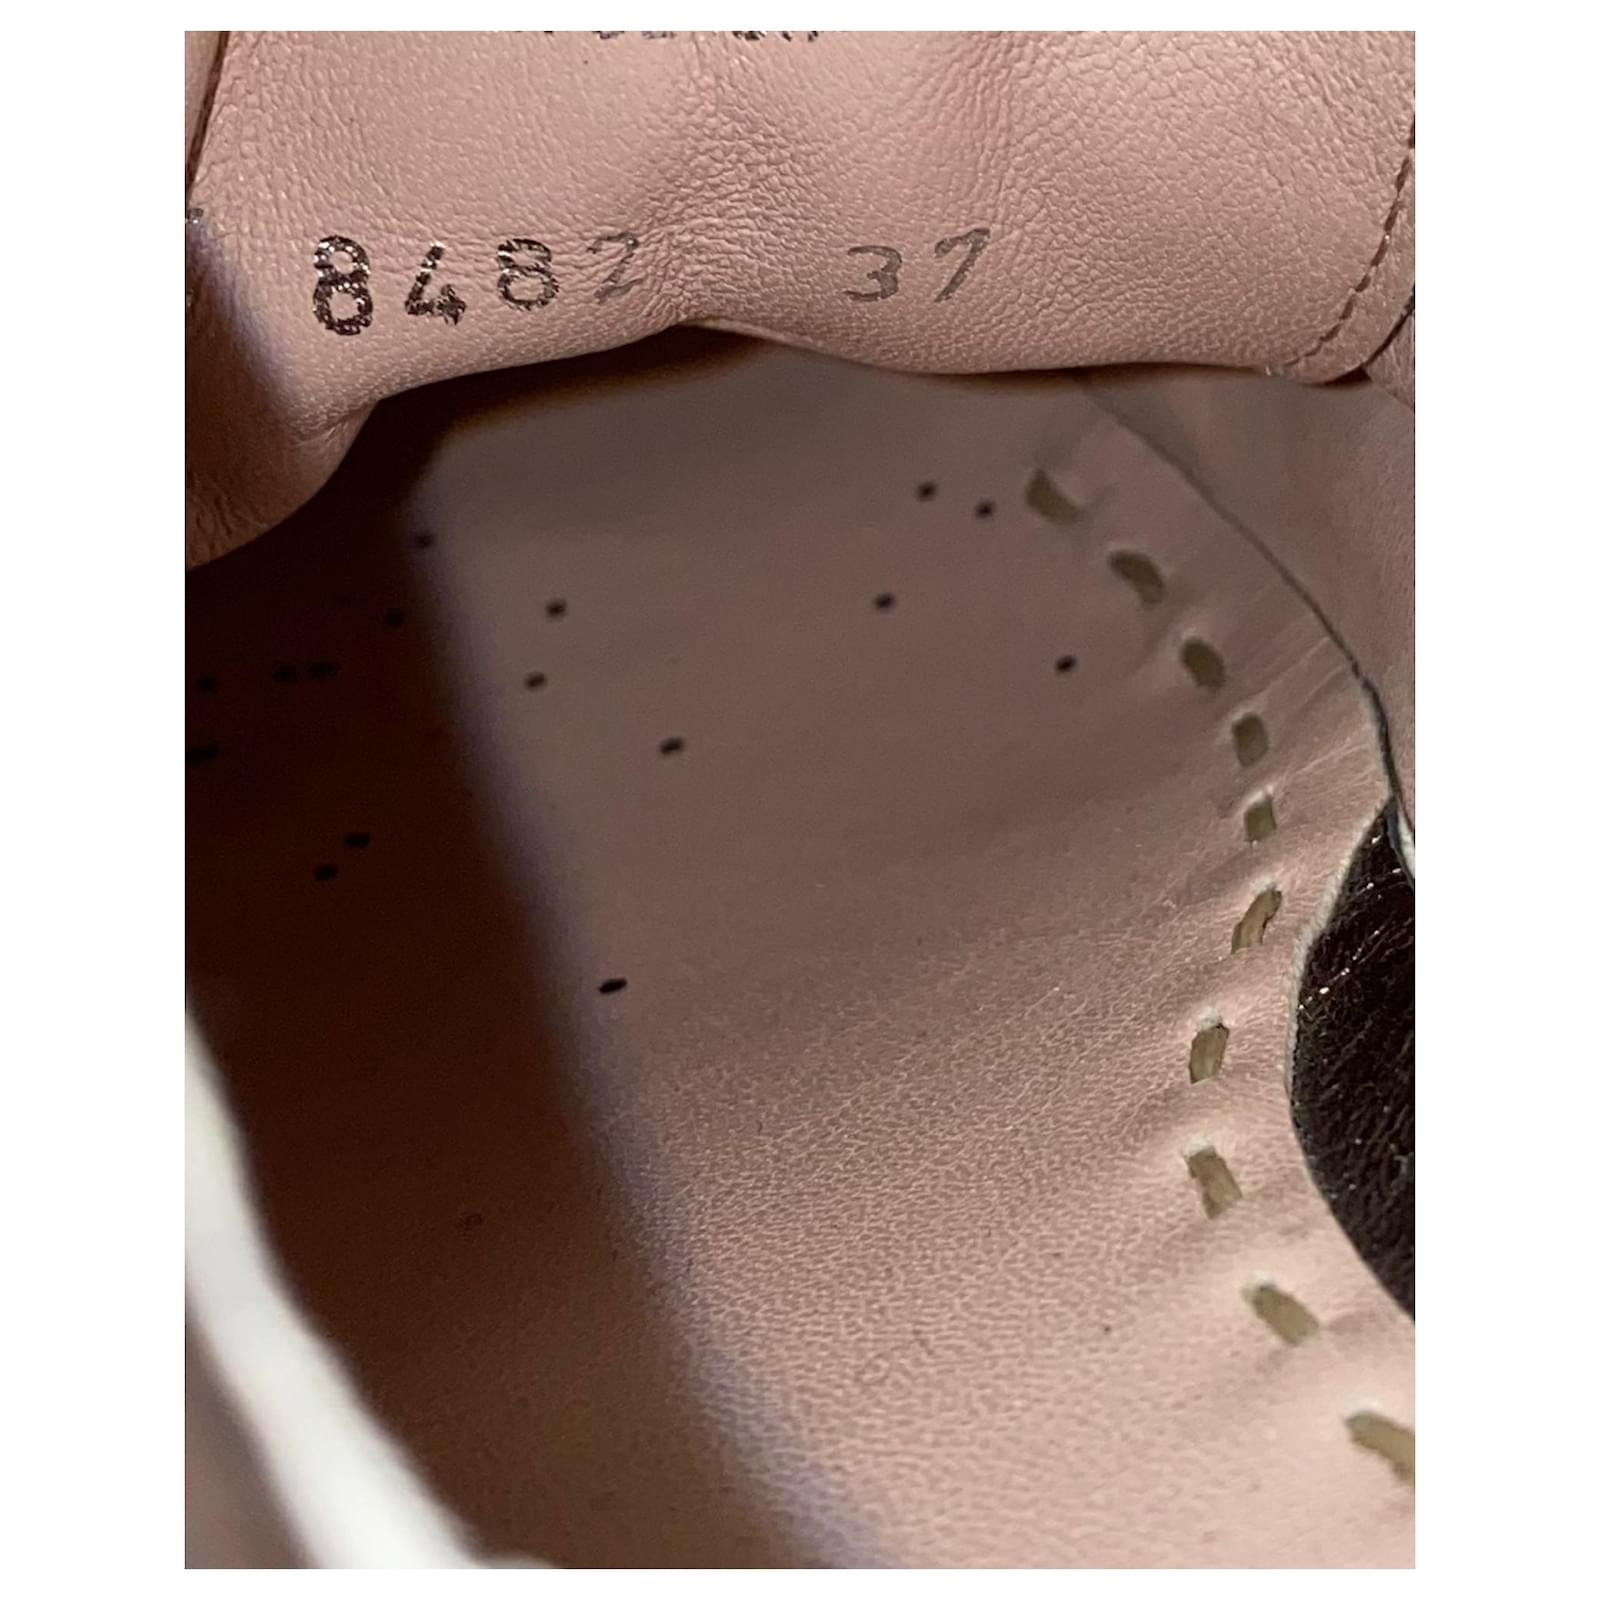 Miu Miu Studded Cap Toe Lace-Up Sneakers in Silver Glitter Silvery  ref.675530 - Joli Closet